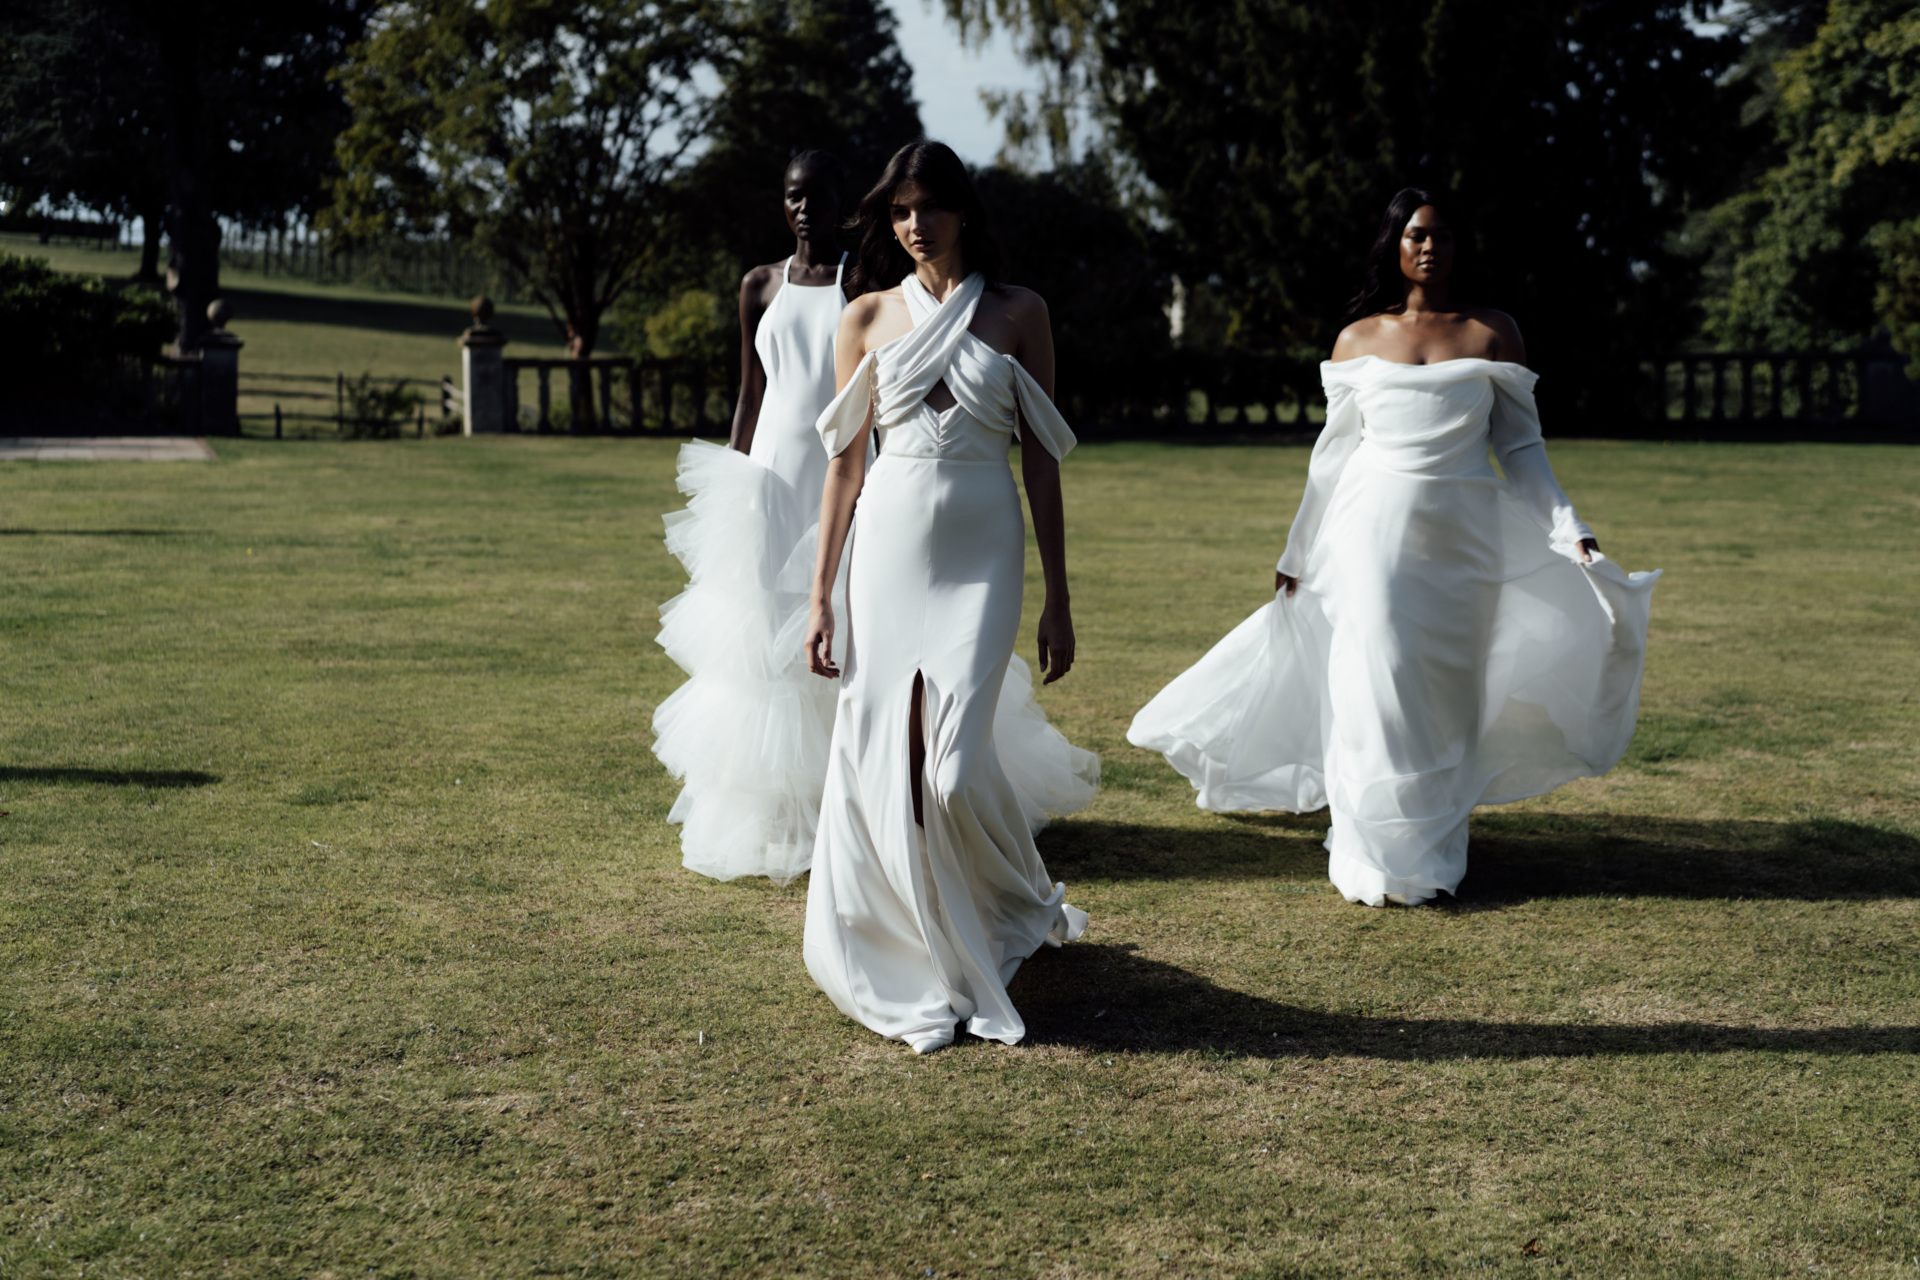 Three women in wedding dresses walking across grass